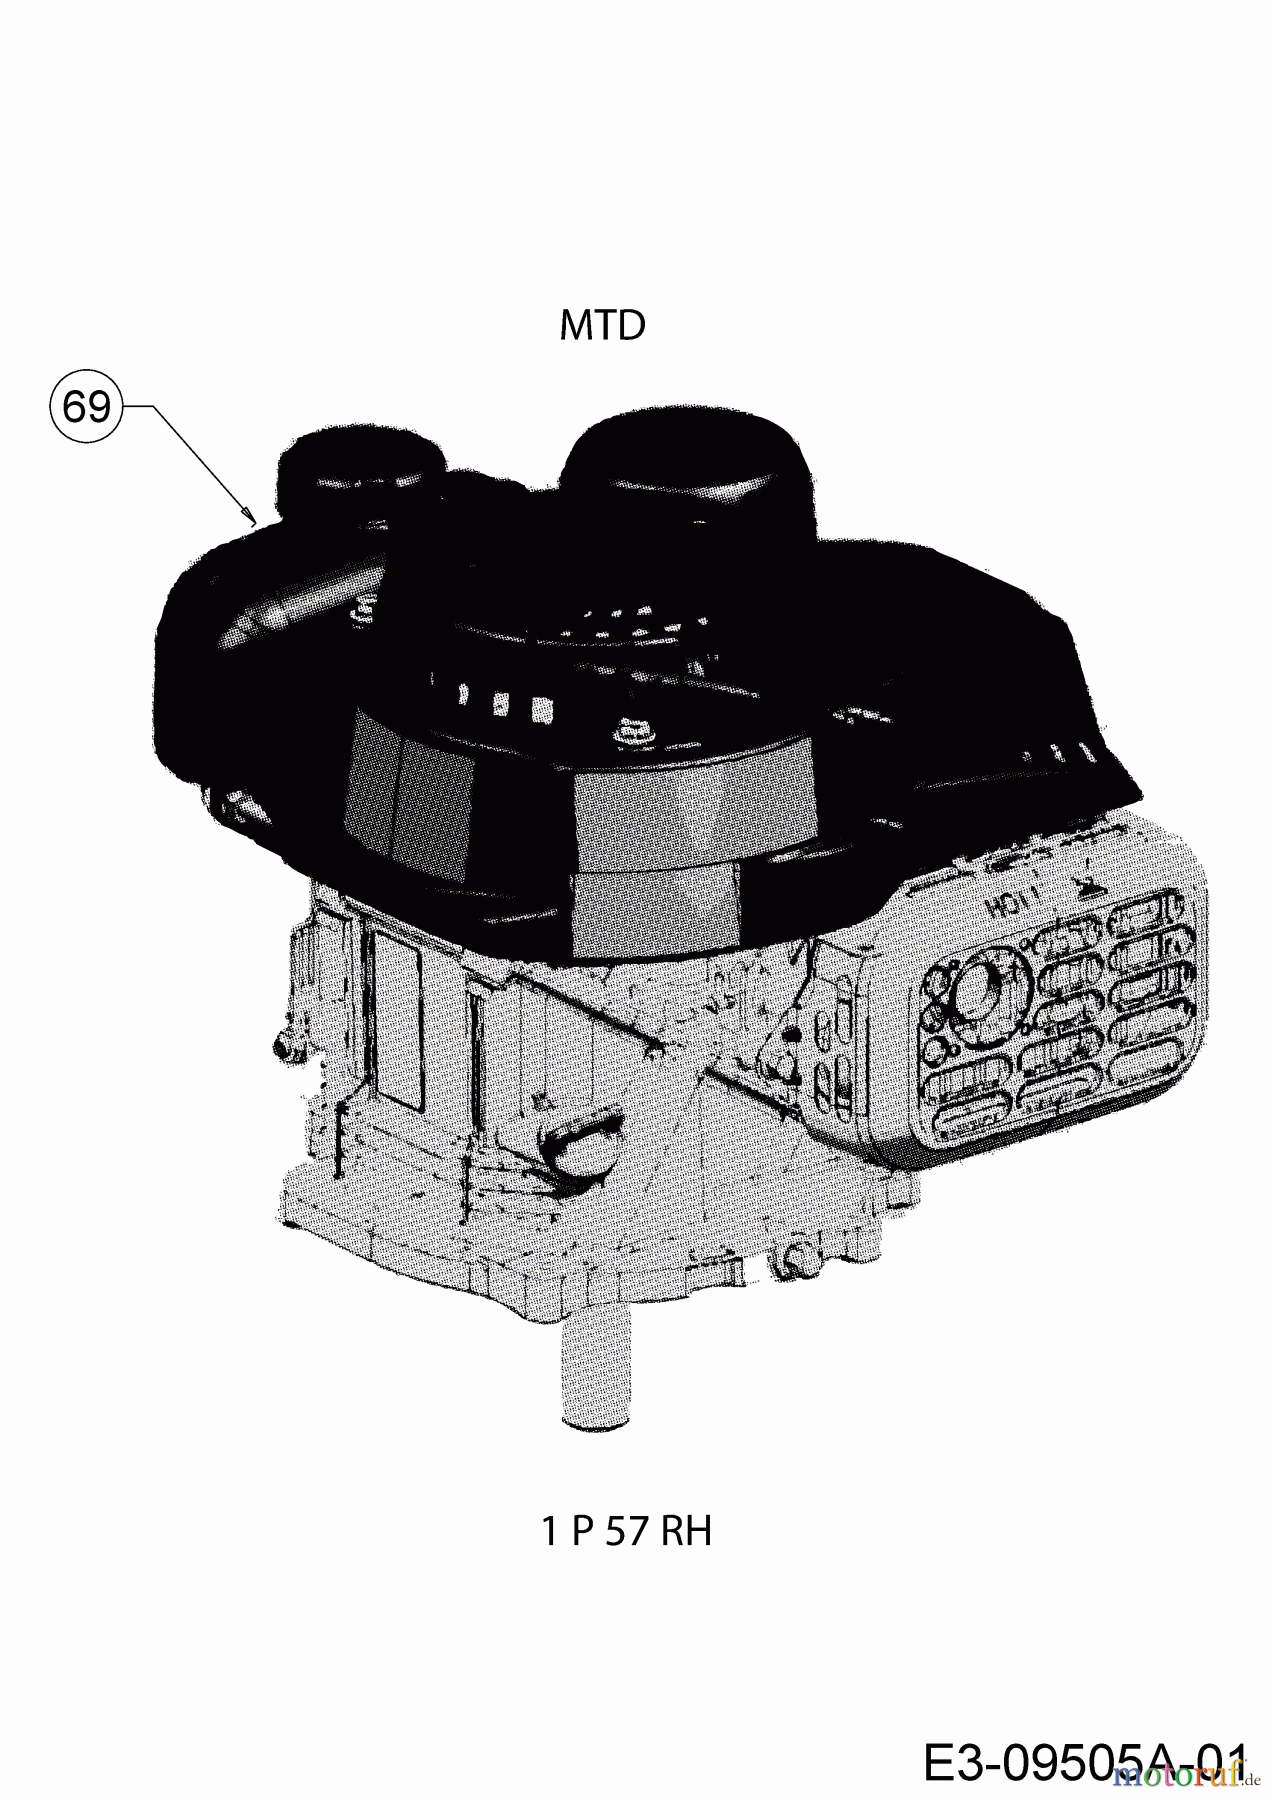  MTD Petrol mower self propelled SP 46 T 12E-TASJ600  (2018) Engine MTD